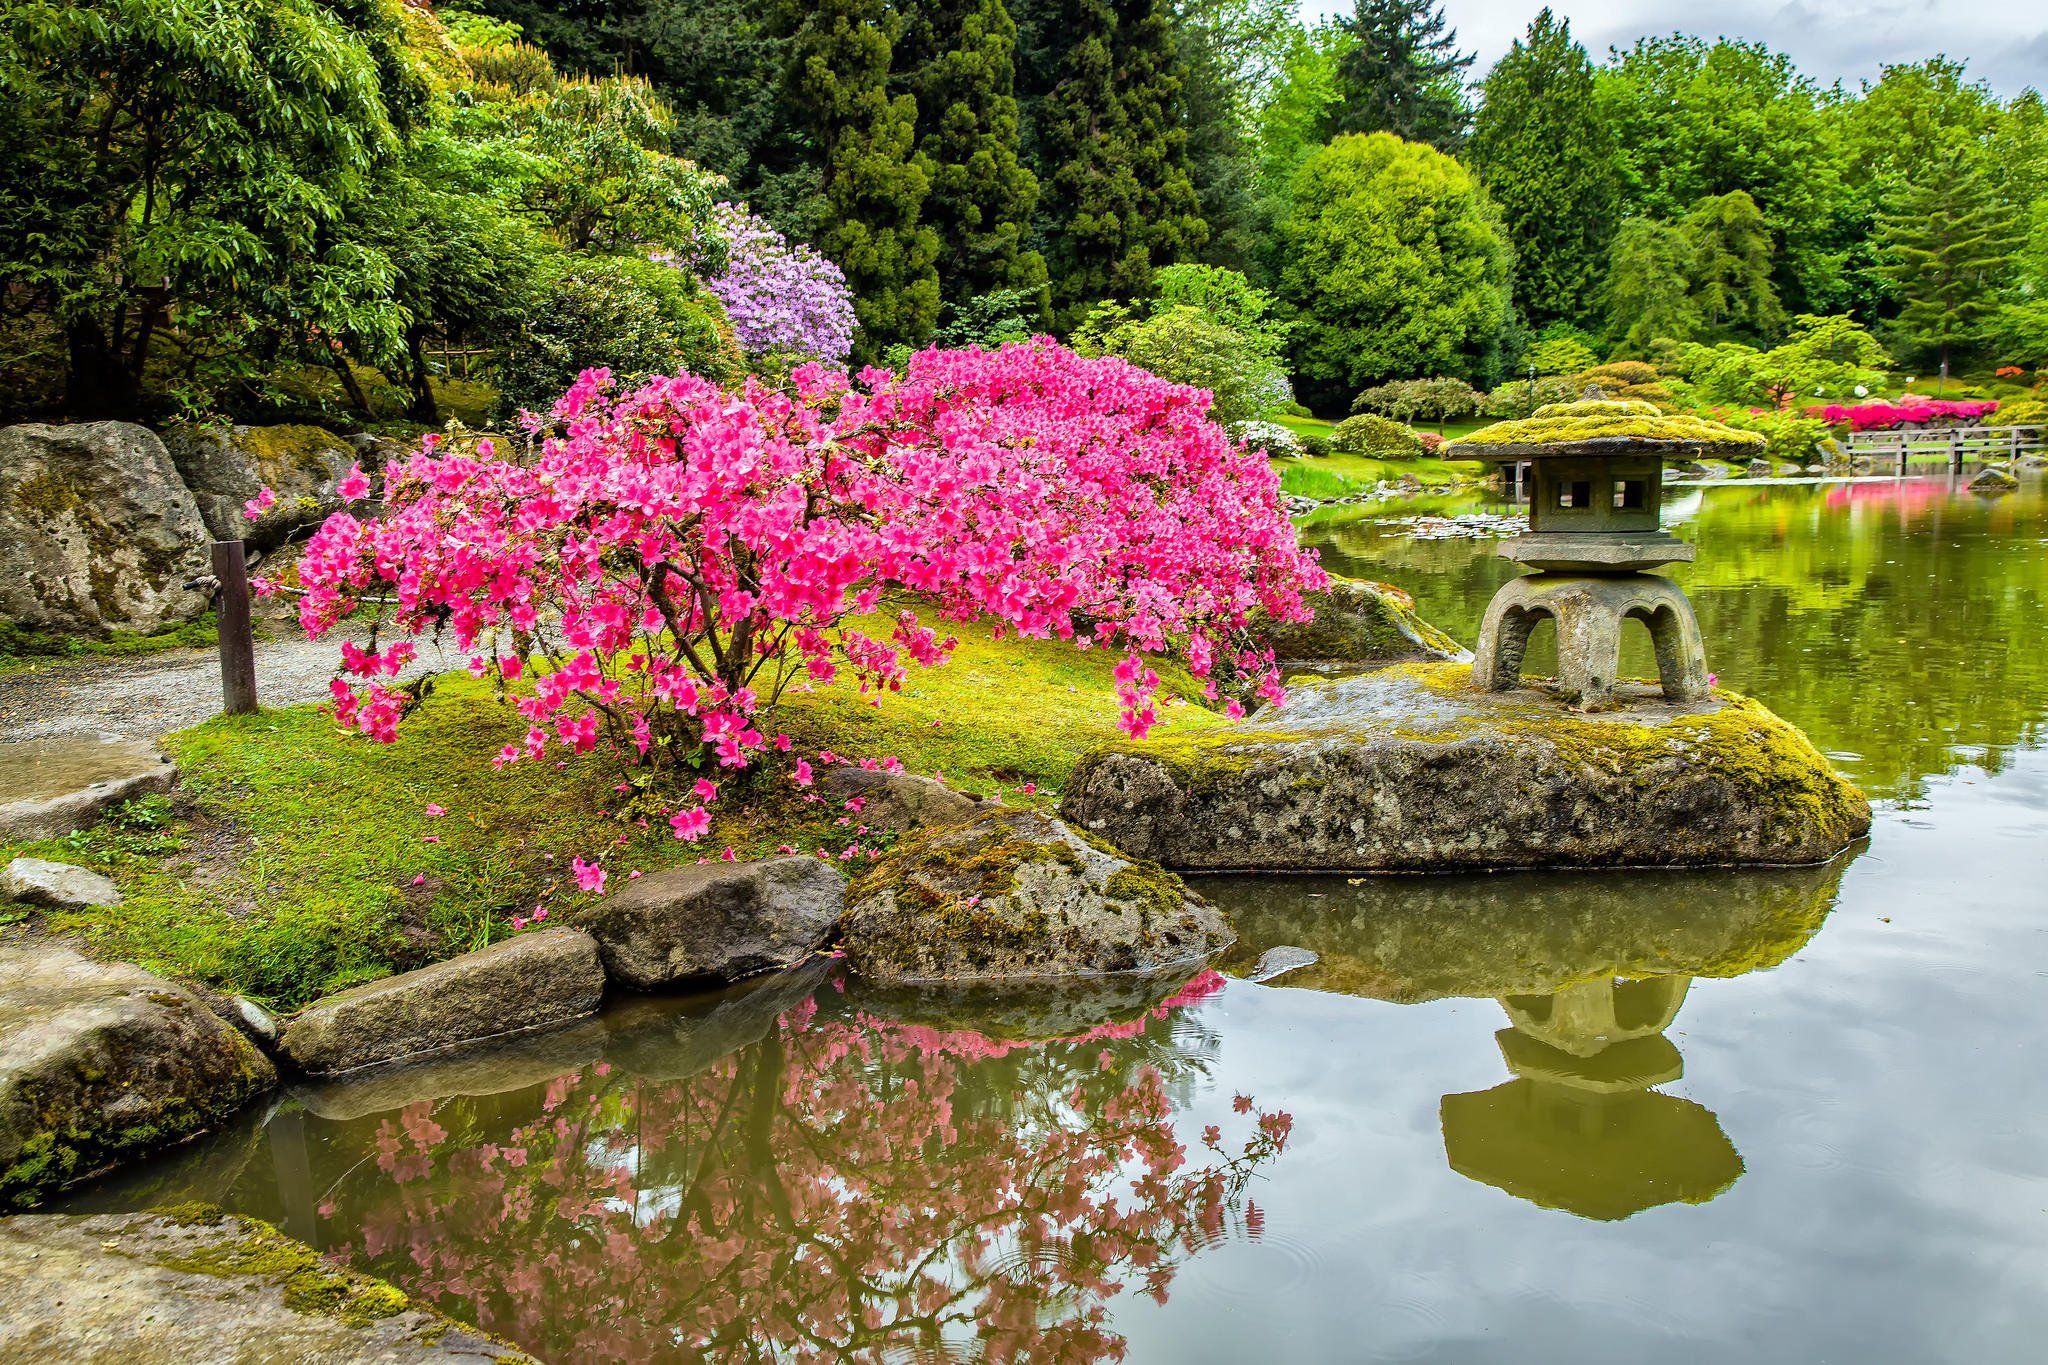 Забронировать столик в японском саду. Коичи Курису ландшафтный дизайнер. Дендра парк японский сад. Ландшафтный пейзажный сад Японии. Парк Синдзюку гёэн Сакура.